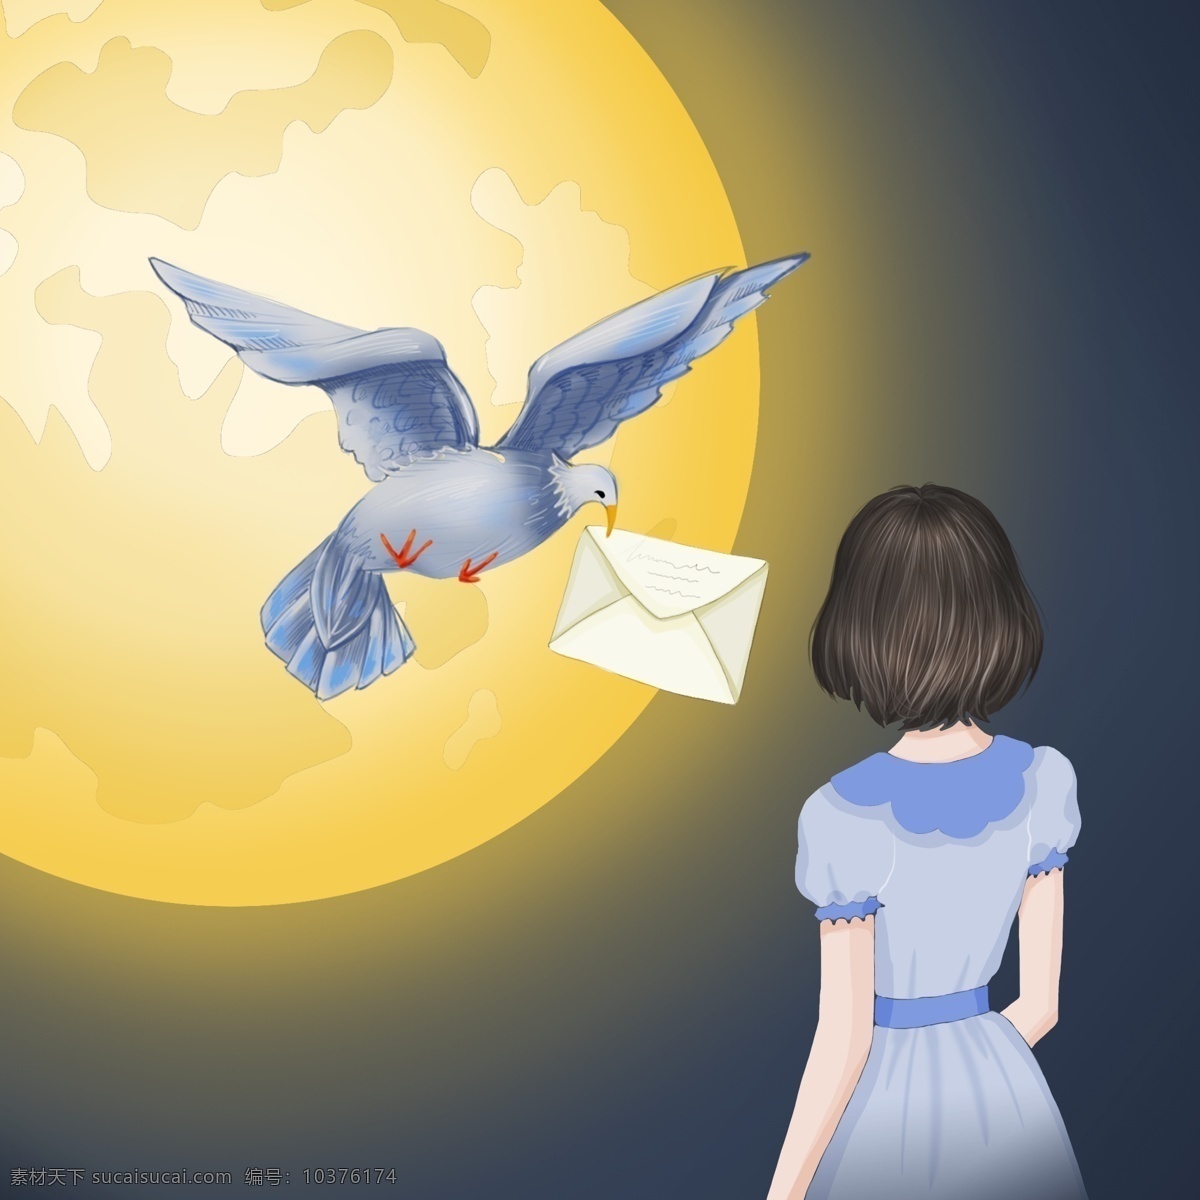 鸽子 带来 远方 信件 蓝色 黄色 金色 唯美 浪漫 女孩 裙子 白色 月球 月色 背影